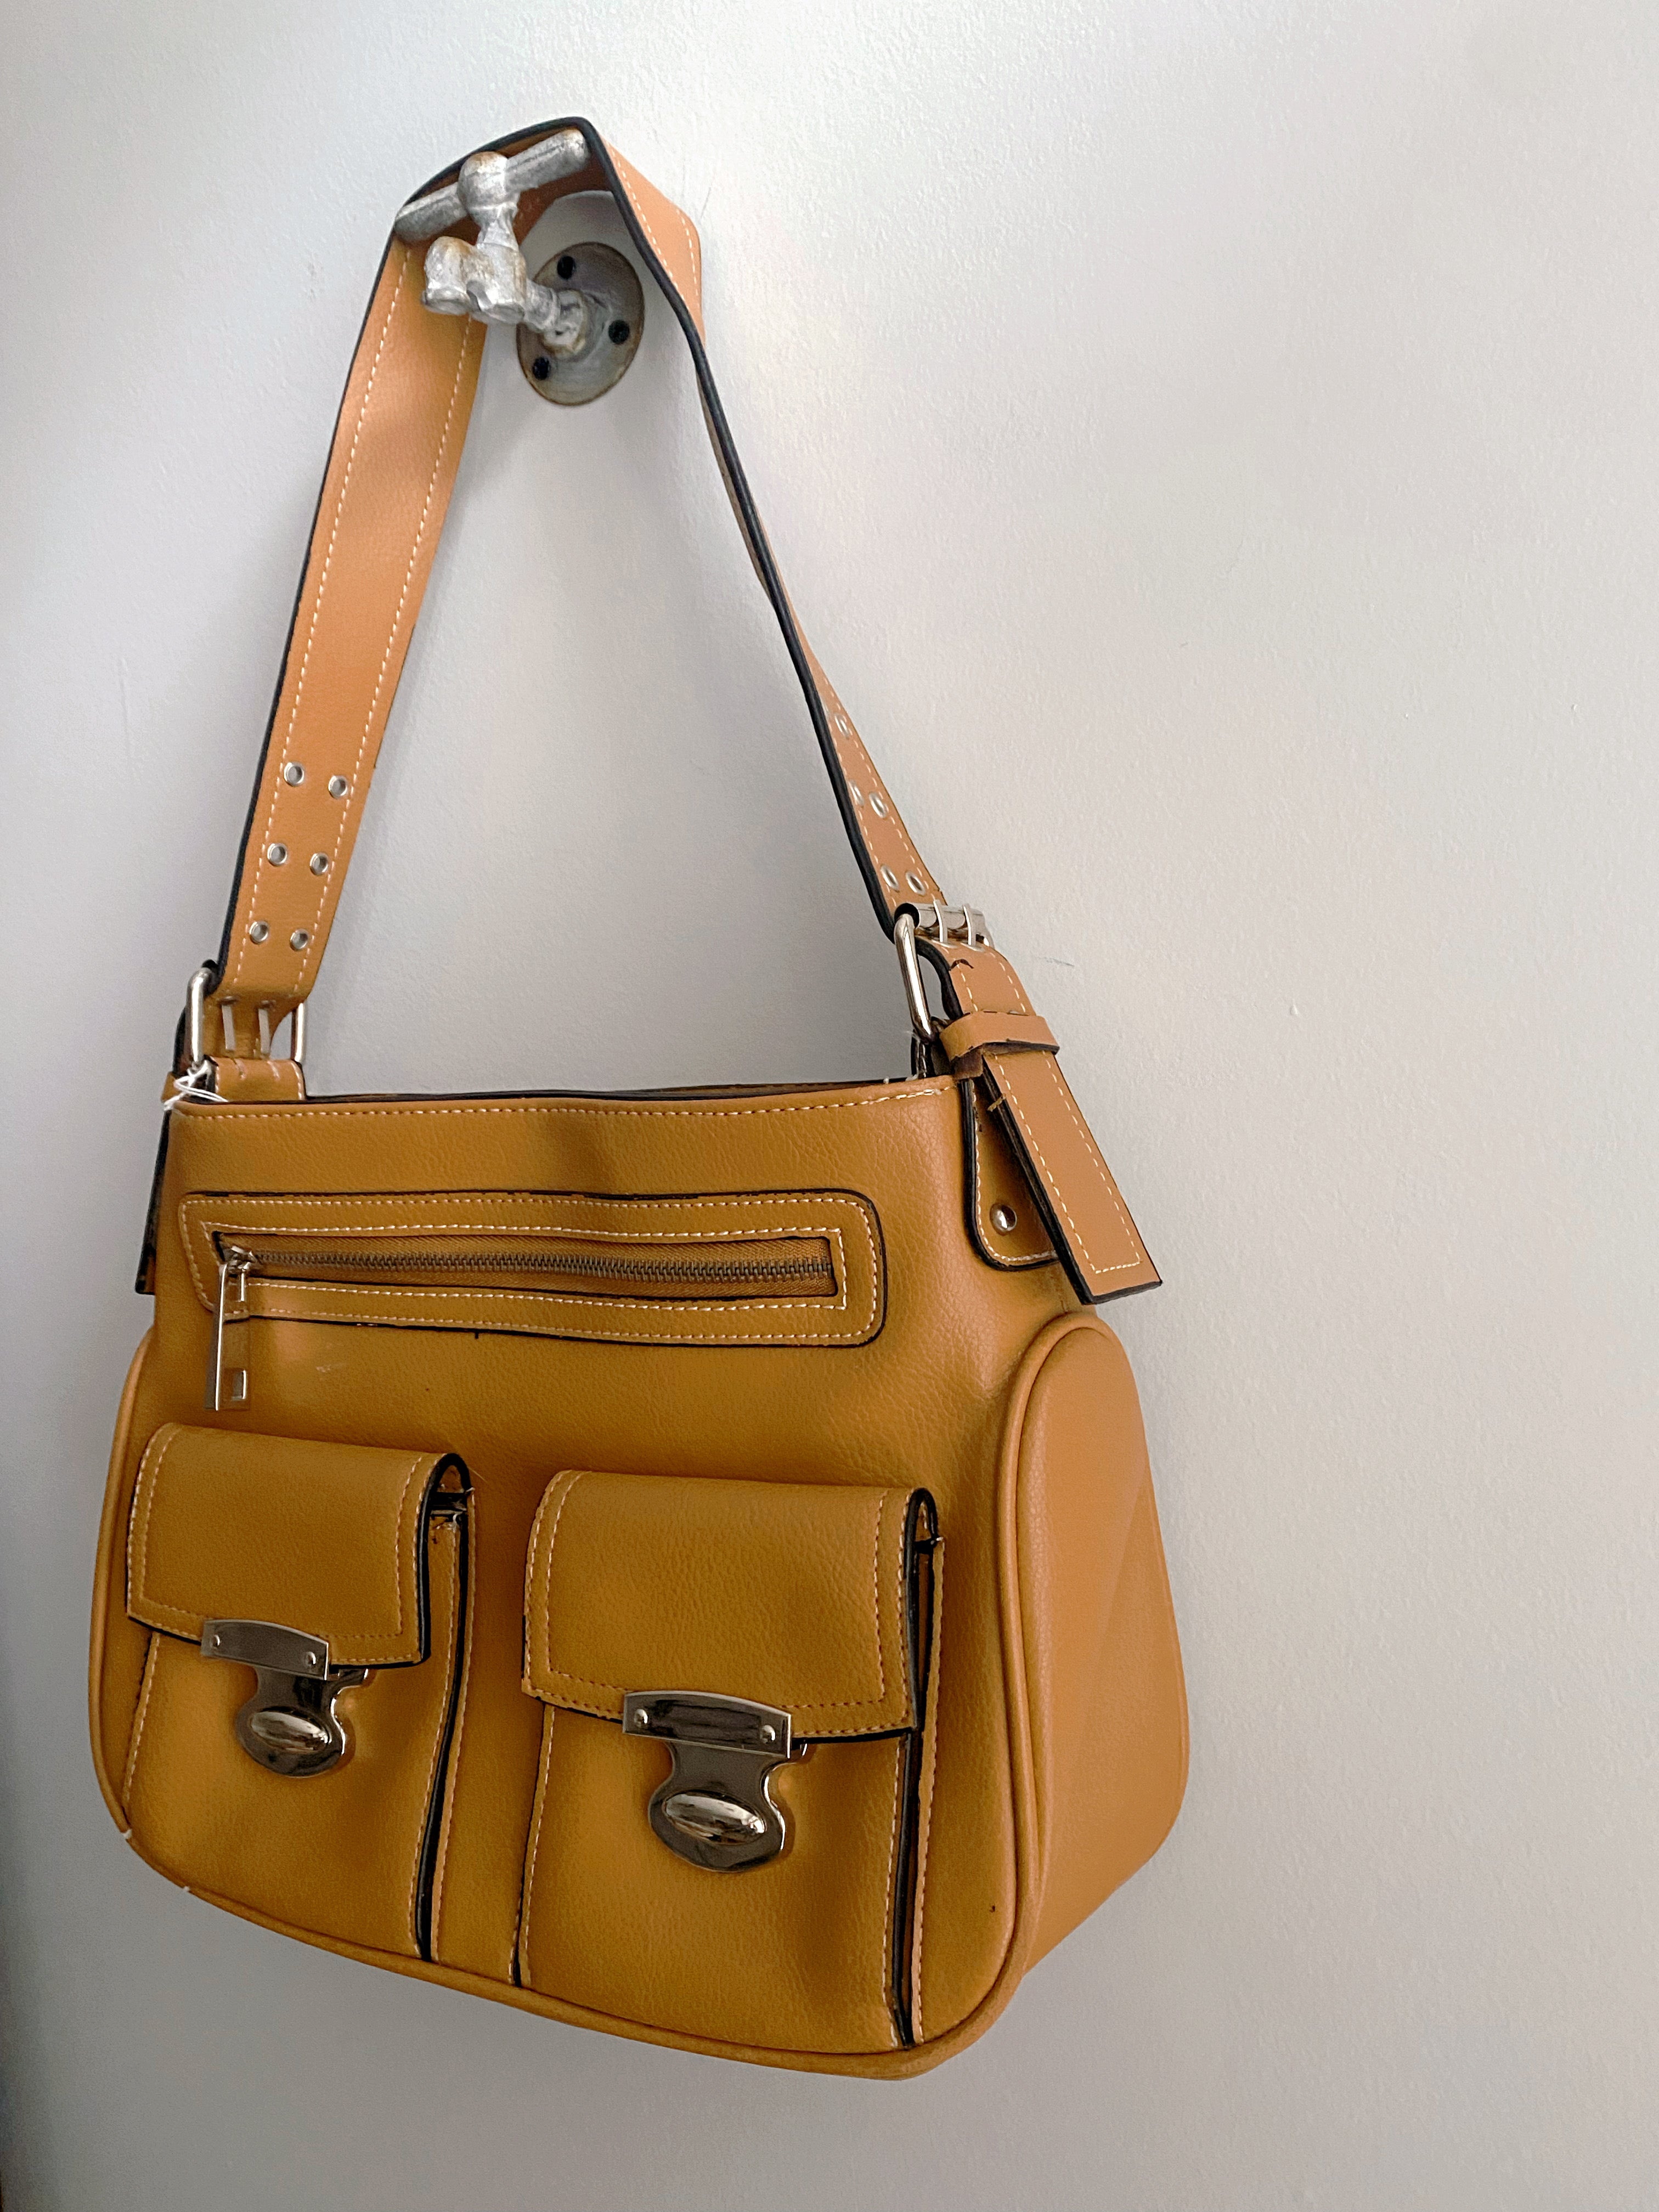 Coach Patchwork Pochette - Brown Handle Bags, Handbags - CCH22752